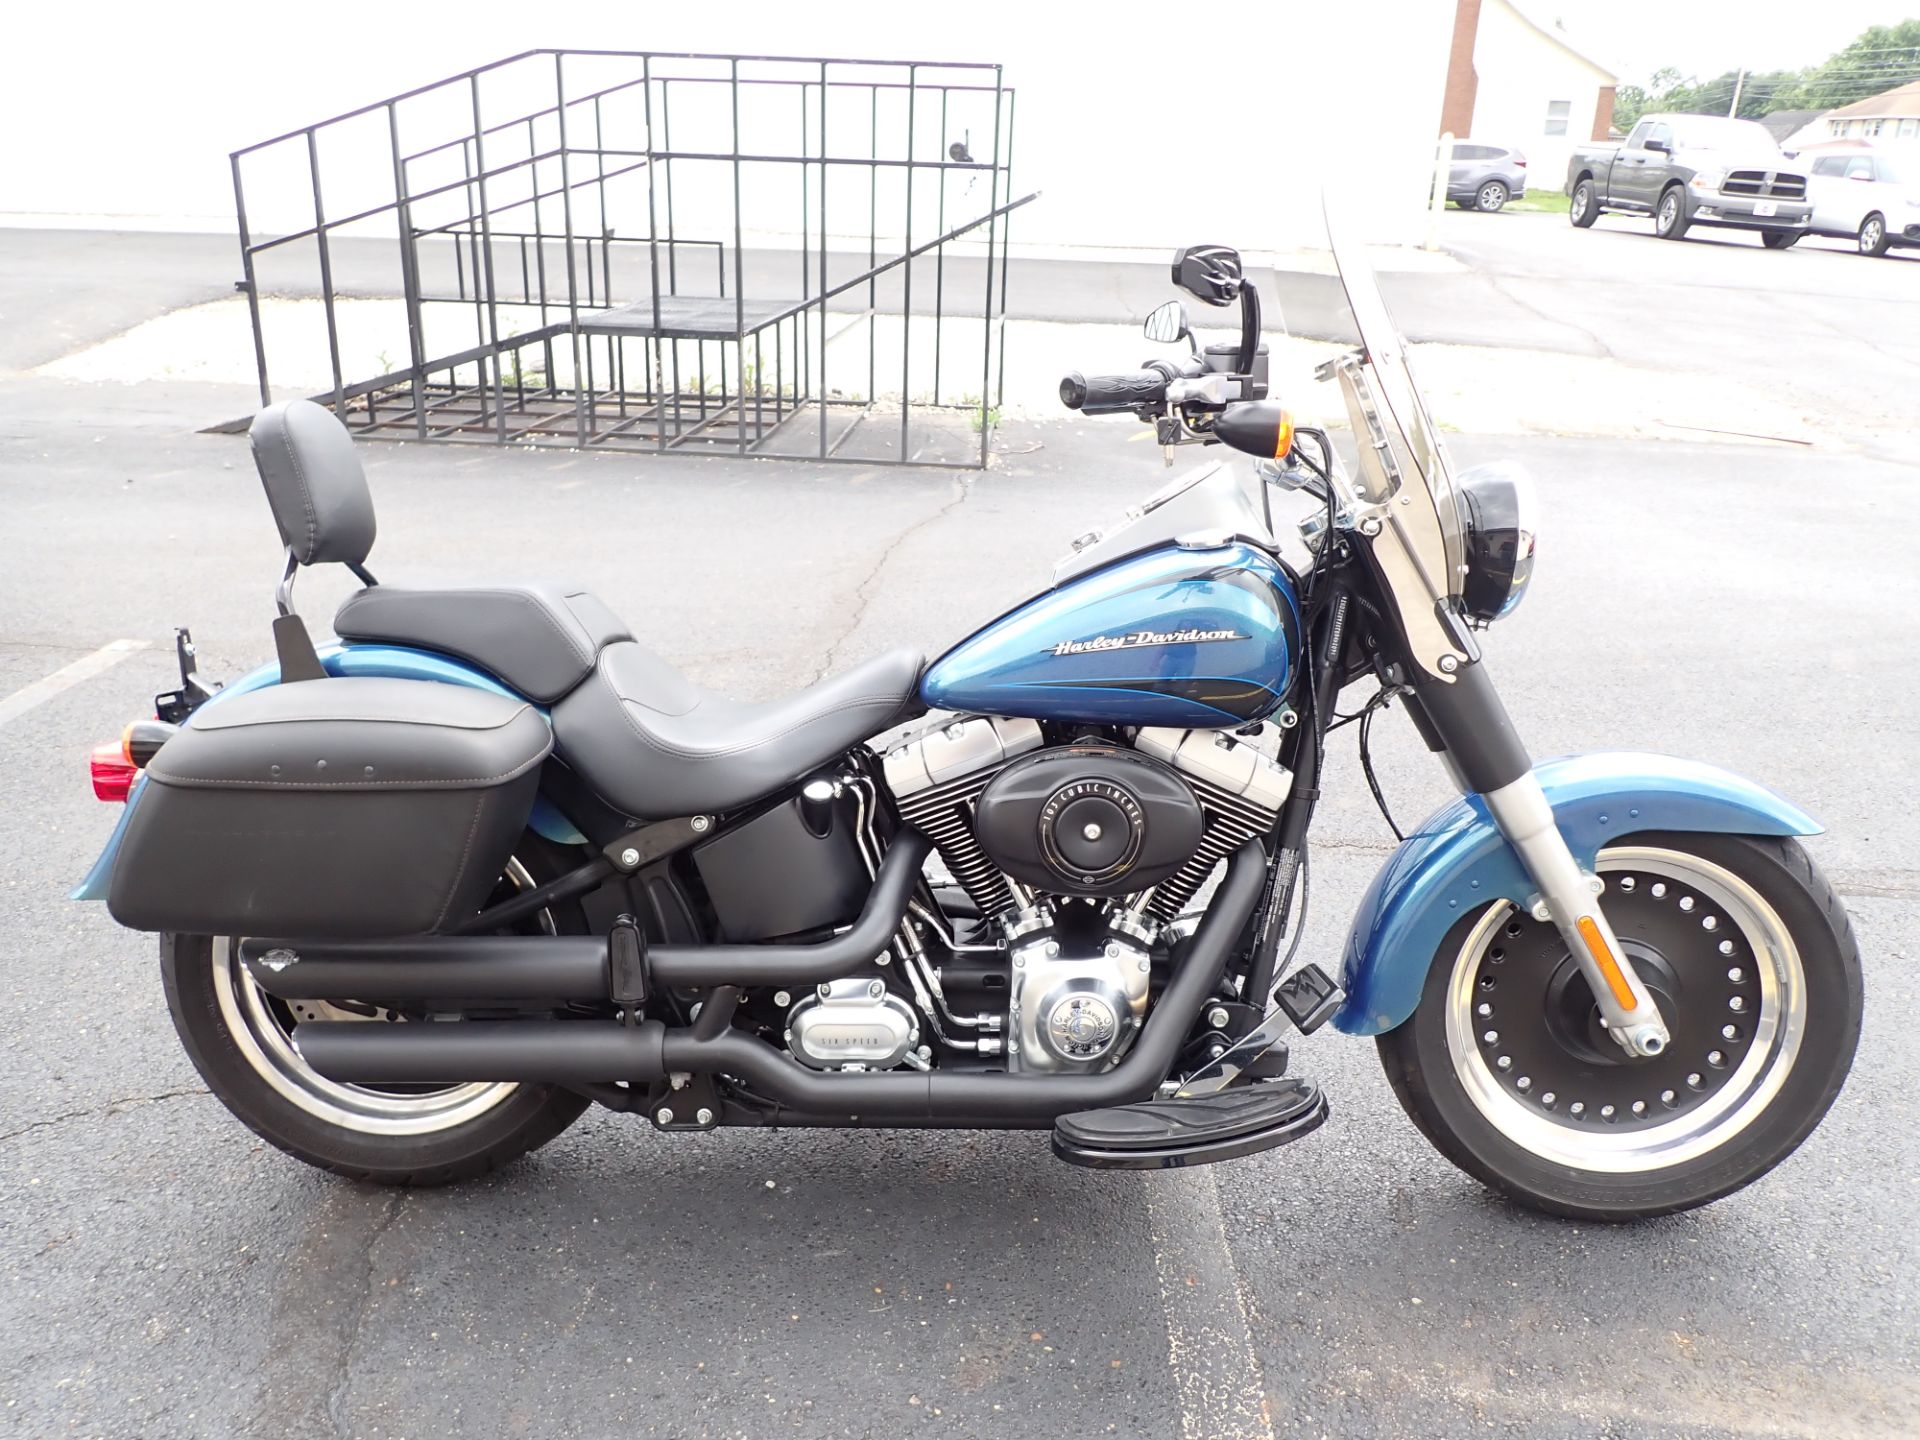 2014 Harley-Davidson Fat Boy® Lo in Massillon, Ohio - Photo 1